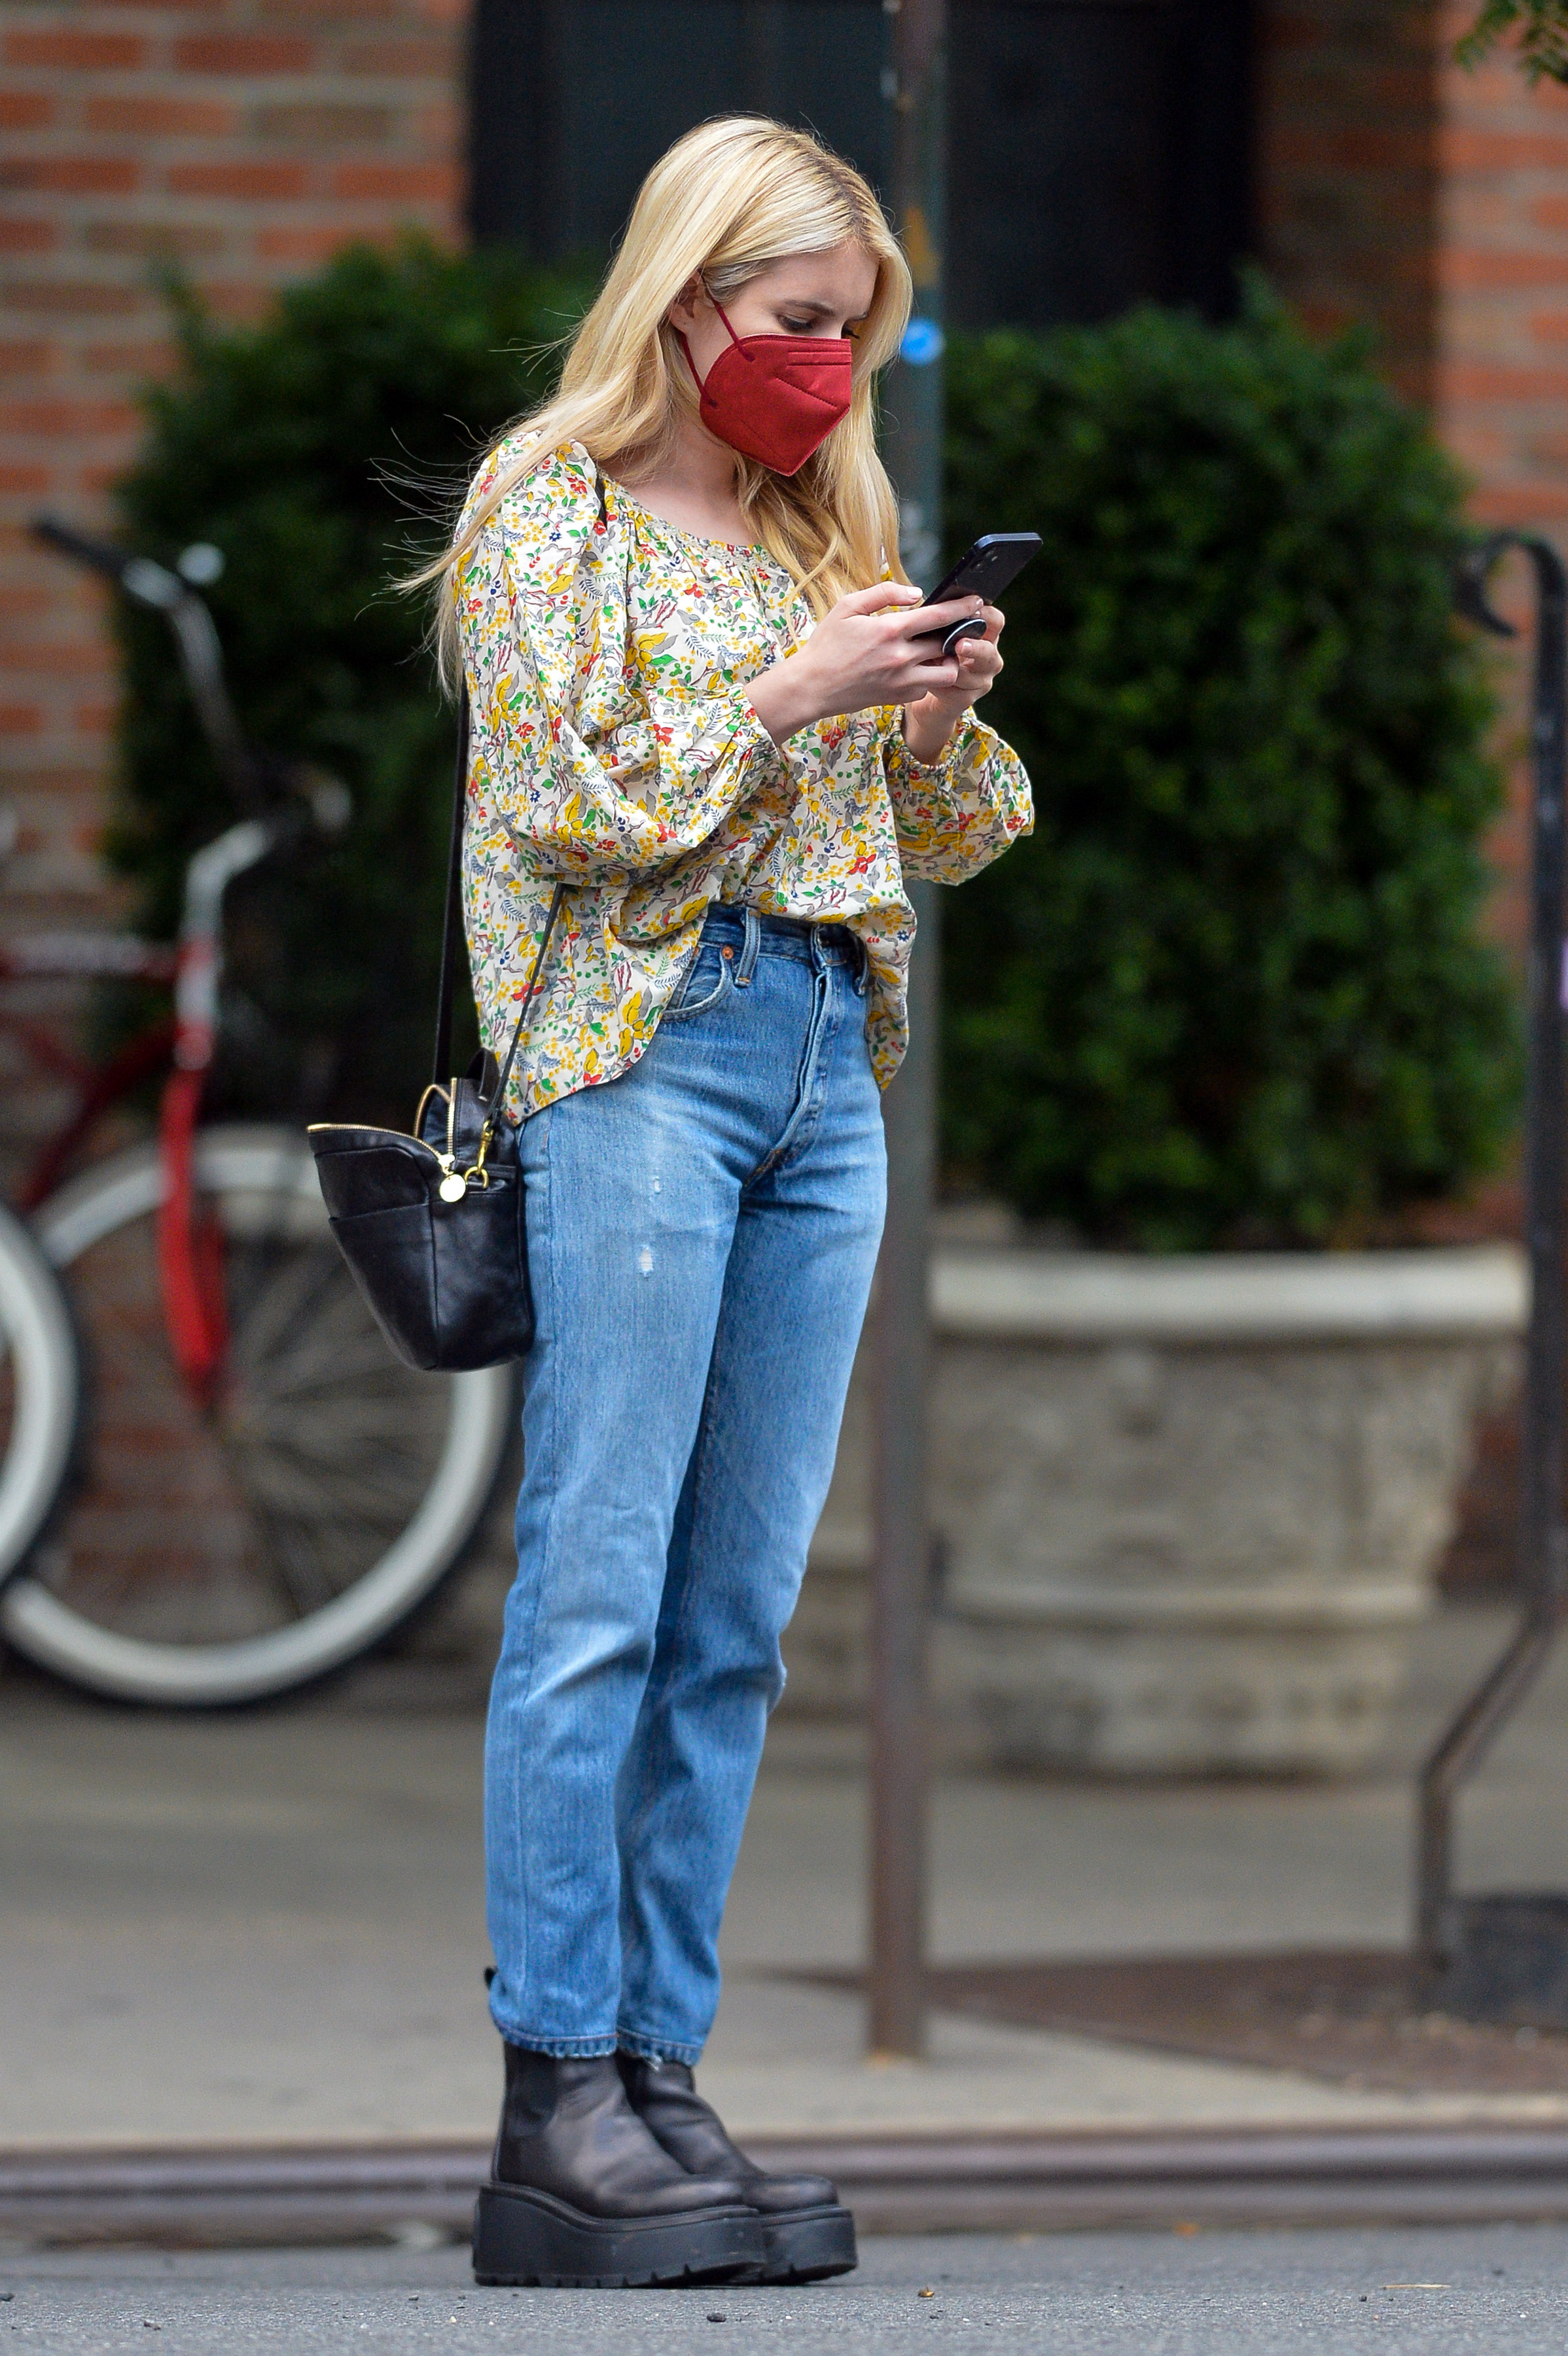 Emma Roberts dio un paseo por las calles de Nueva York. Lució una camisa estampada de flores, un jean, cartera negra que combinó con sus borcegos y un tapabocas color rojo (Fotoso: The Grosby Group)